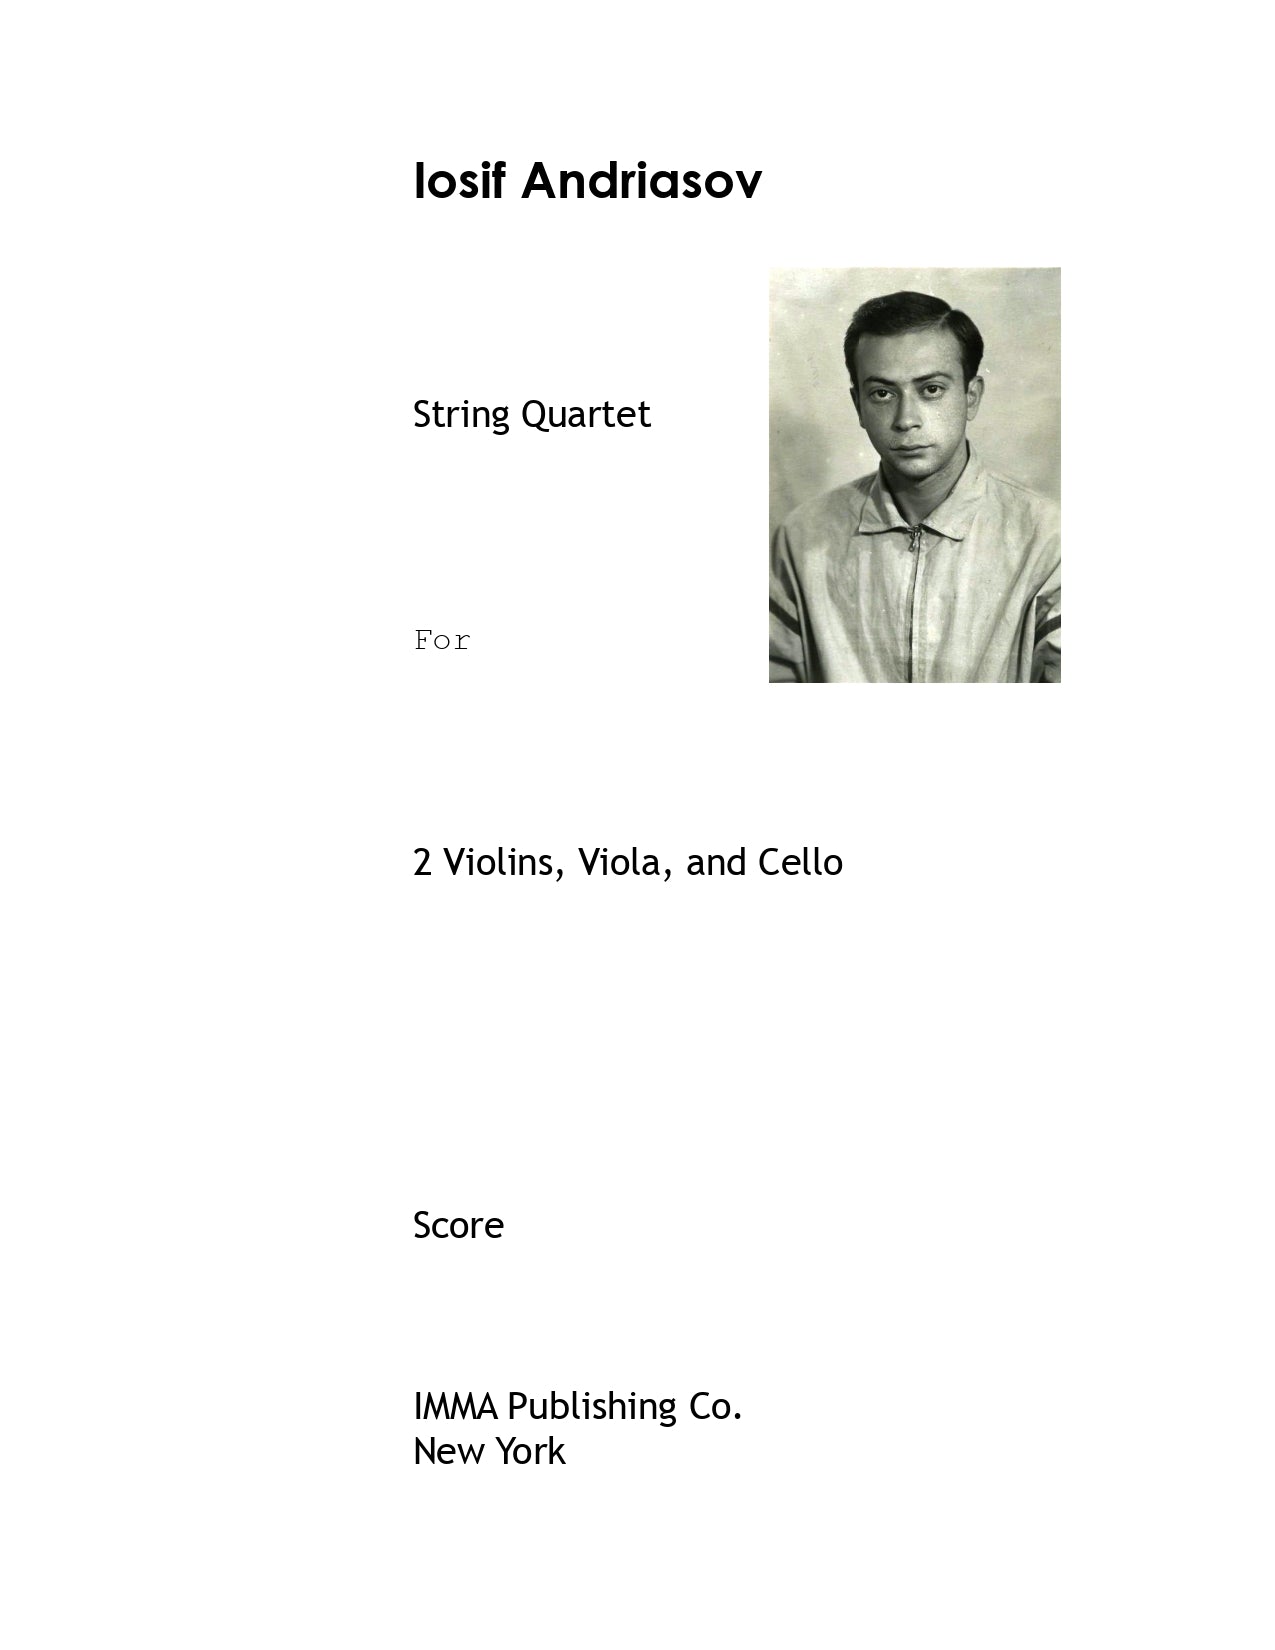 004. Iosif Andriasov: String Quartet, Op. 1 (PDF)